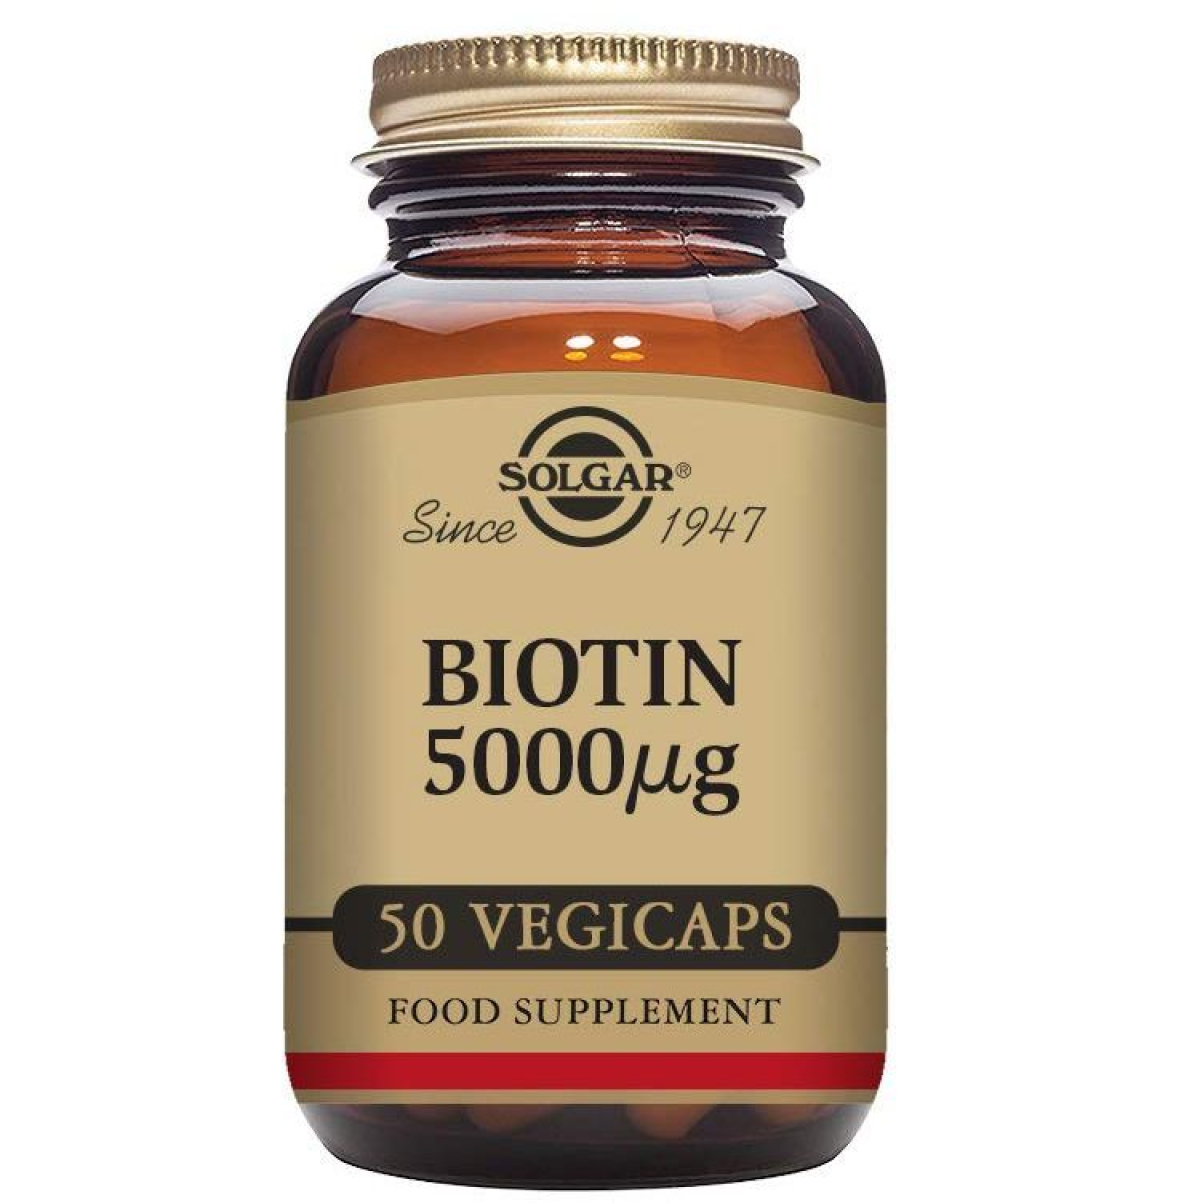 Solgar Biotin Capsules